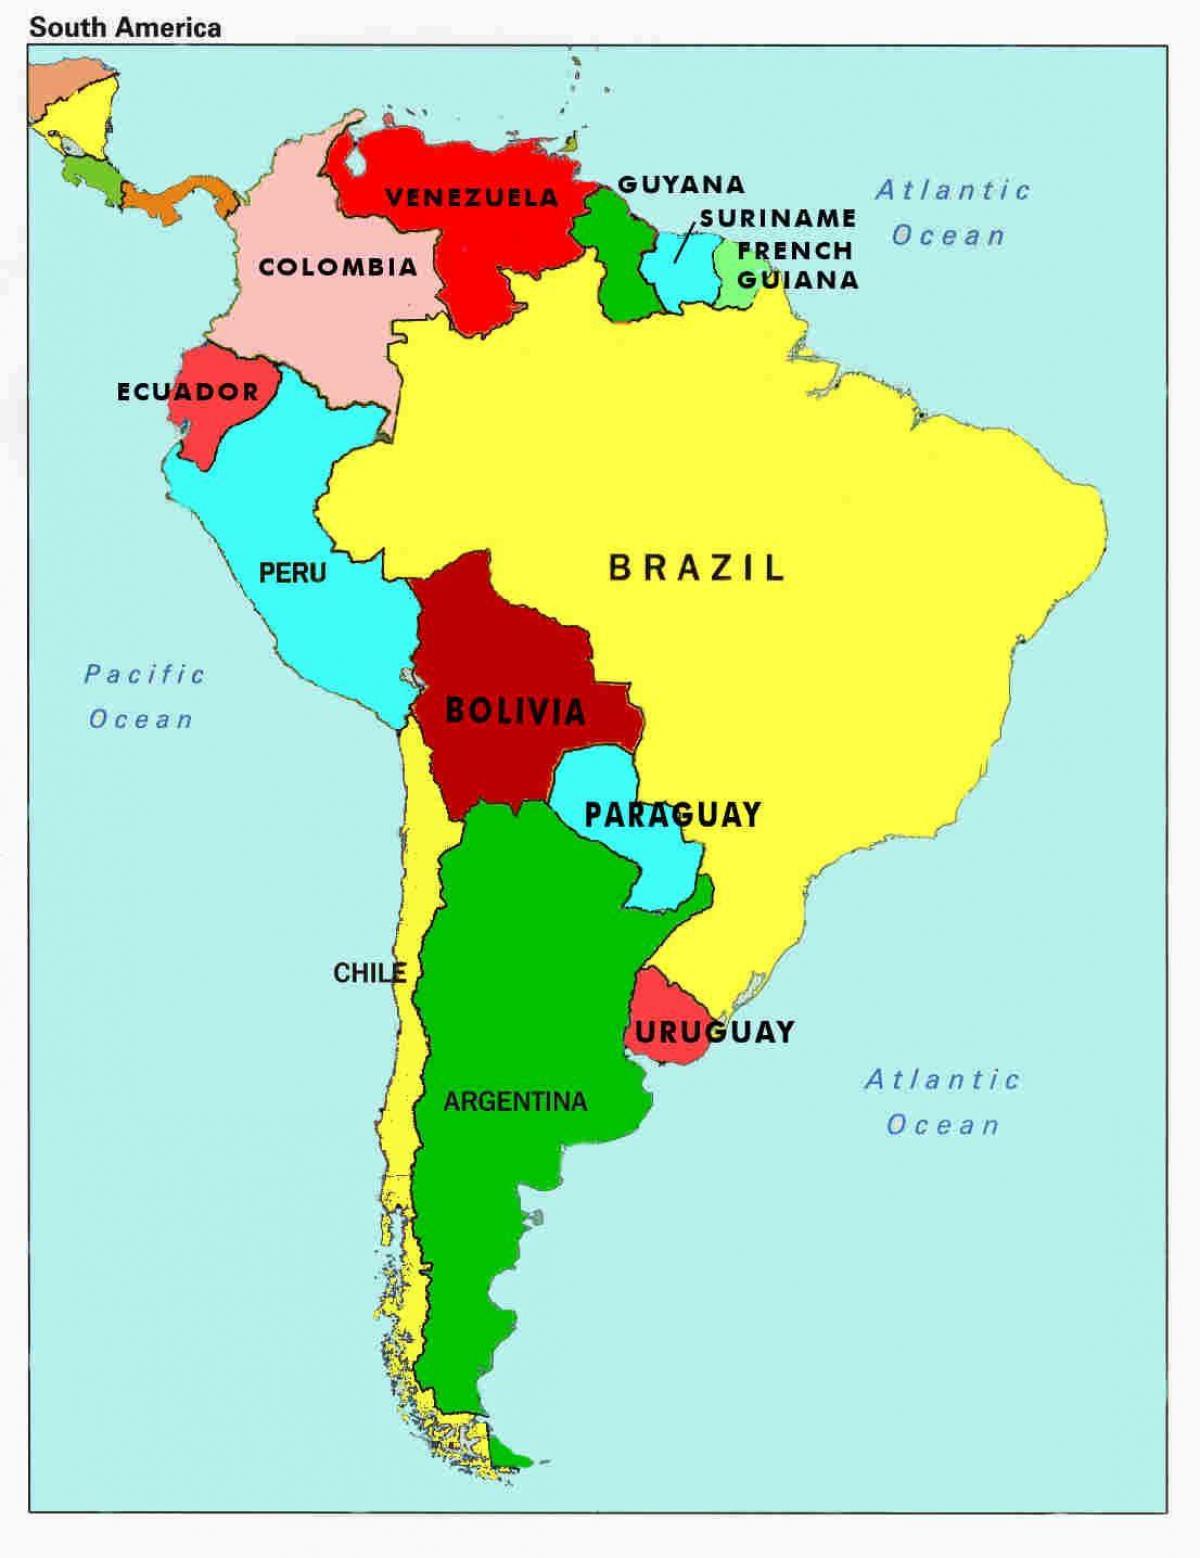 નકશો વેનેઝુએલા અને આસપાસના દેશોમાં